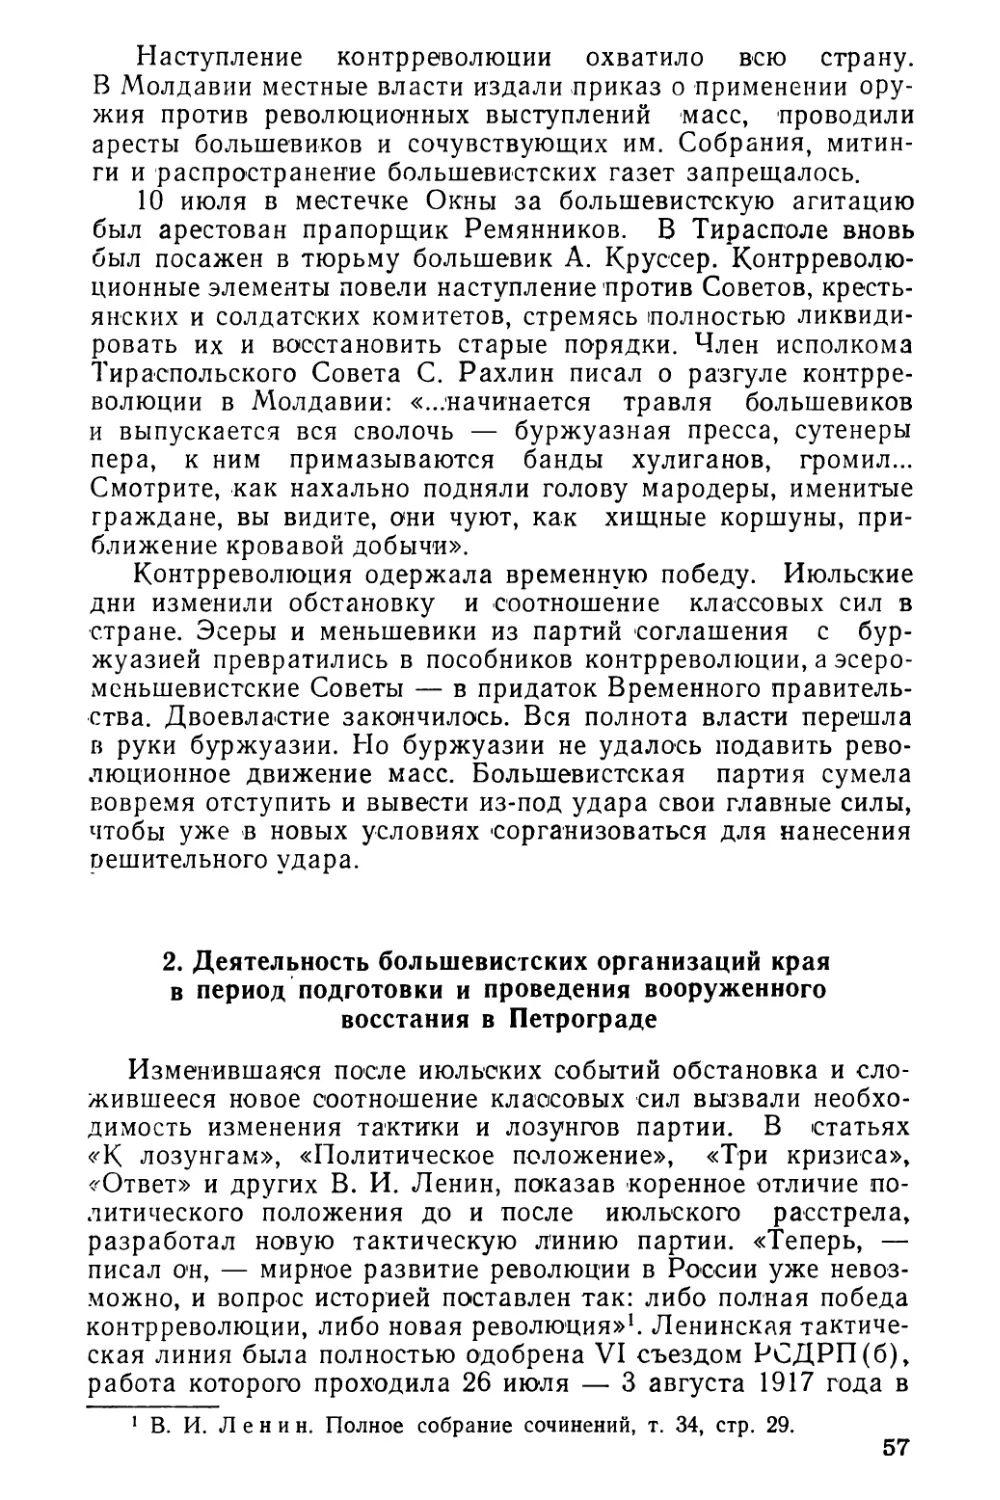 2. Деятельность большевистских организаций края в период подготовки и проведения вооруженного восстания в Петрограде